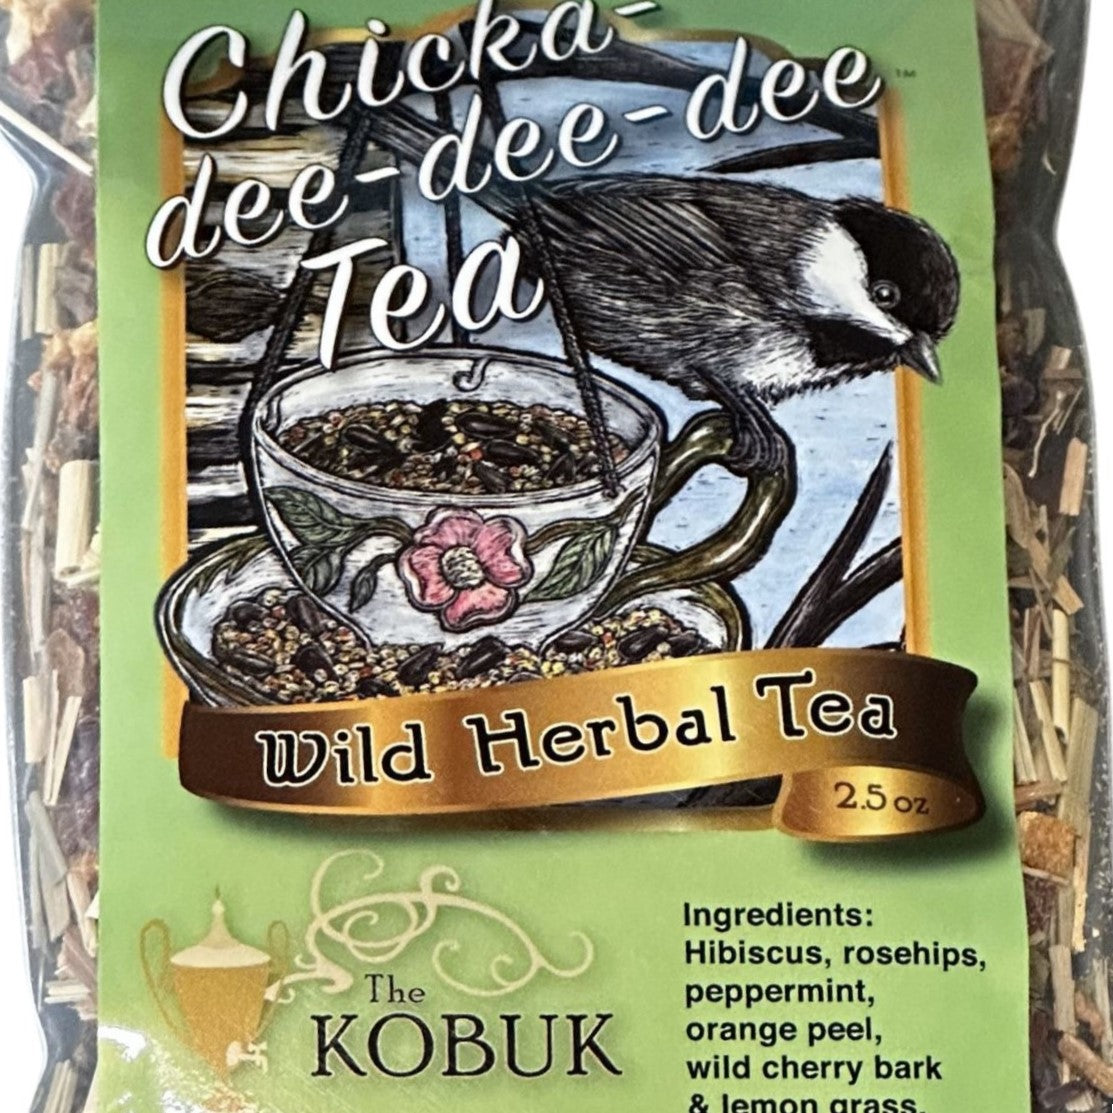 Chickadee-dee-dee Tea